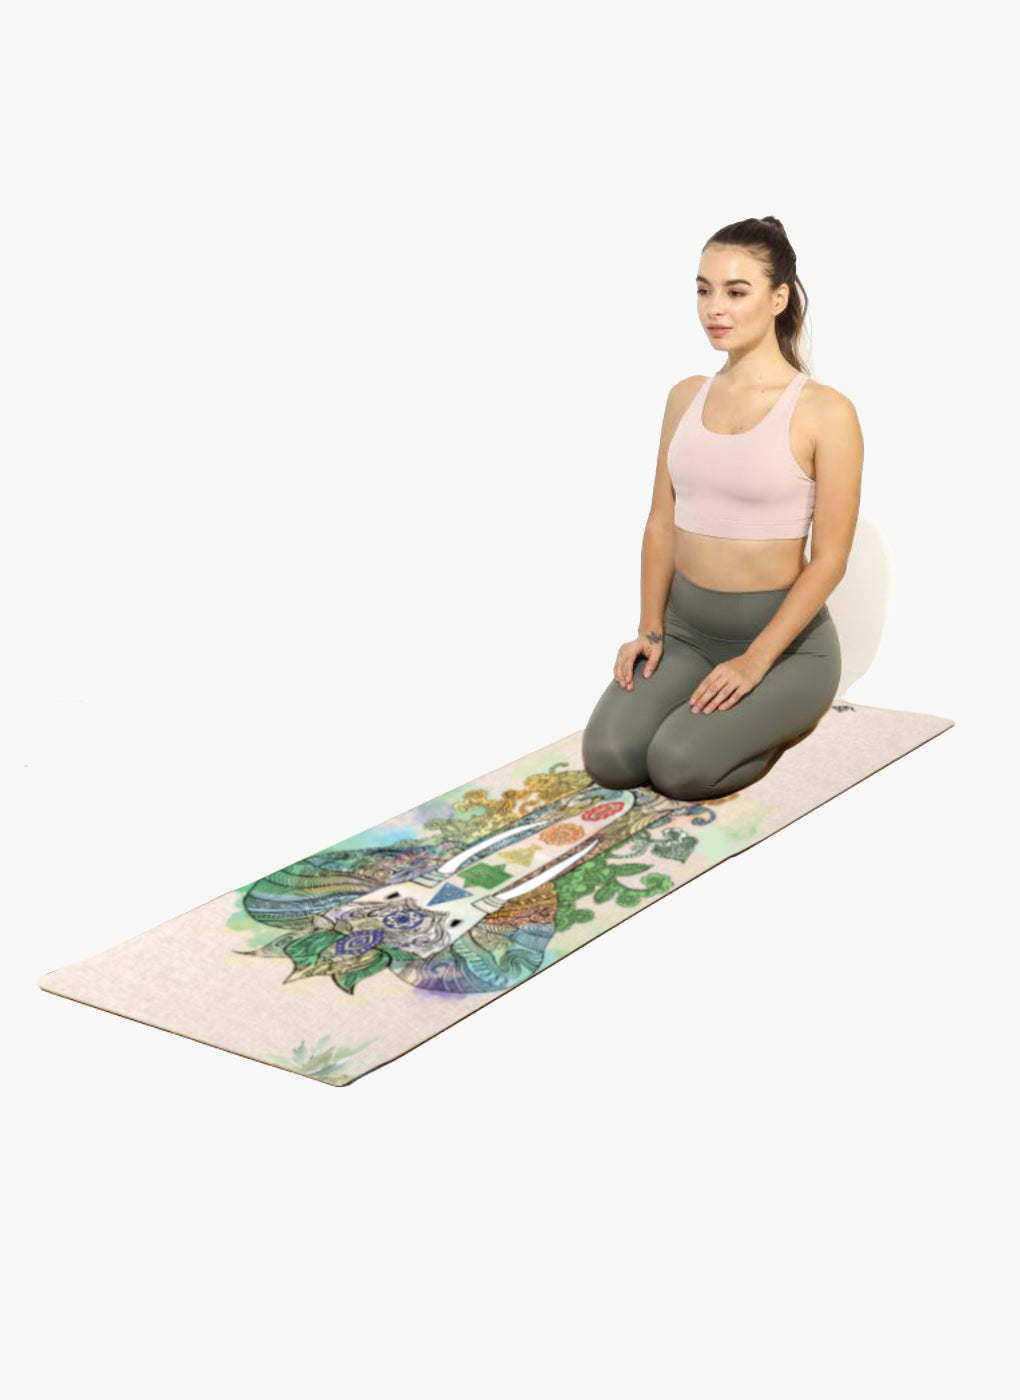 Samskara Hemp Yoga Mat